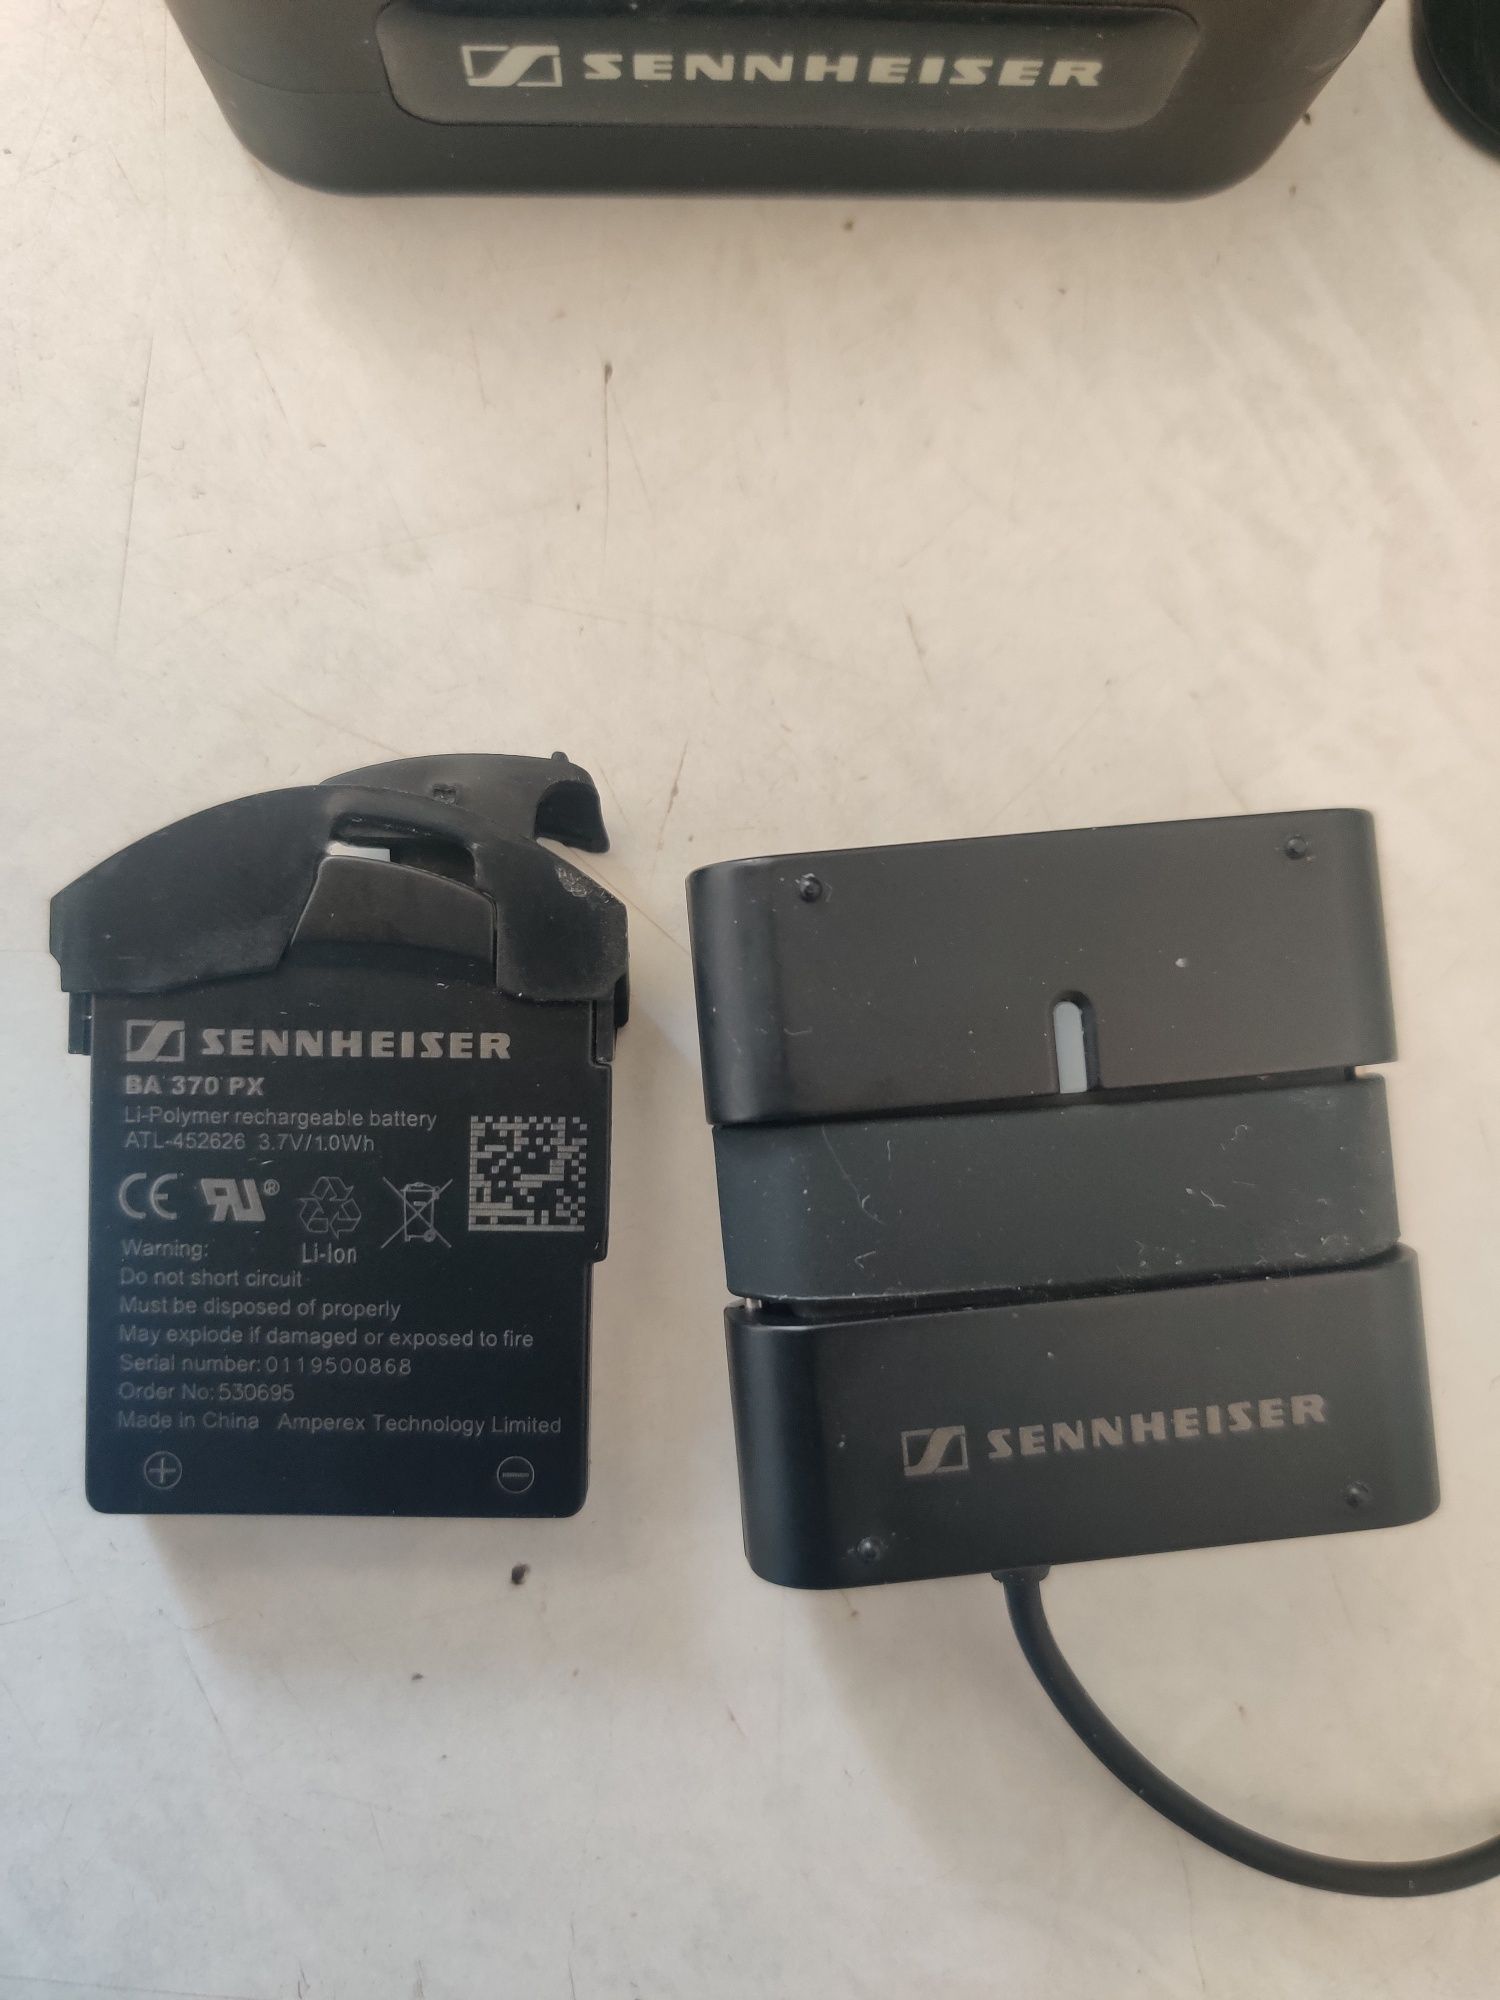 Sennheiser коробка от наушников с амбишурами оригинал, батарейный блок